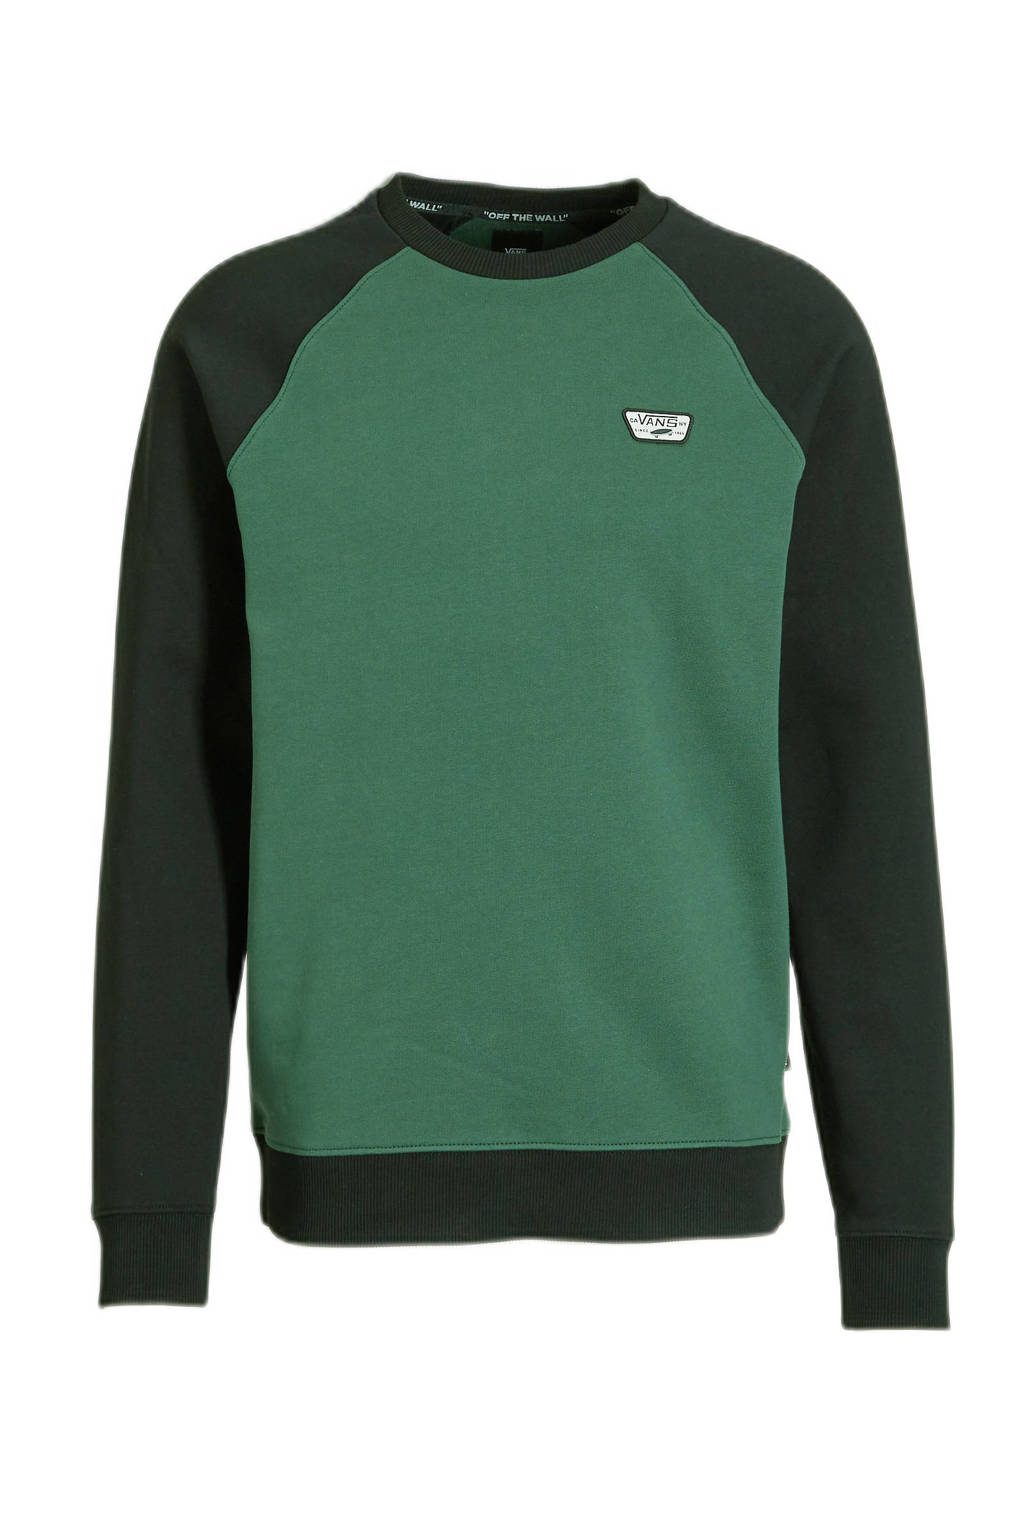 Groen en zwarte heren VANS sweater Rutland III van katoen met meerkleurige print, lange mouwen, ronde hals en geribde boorden